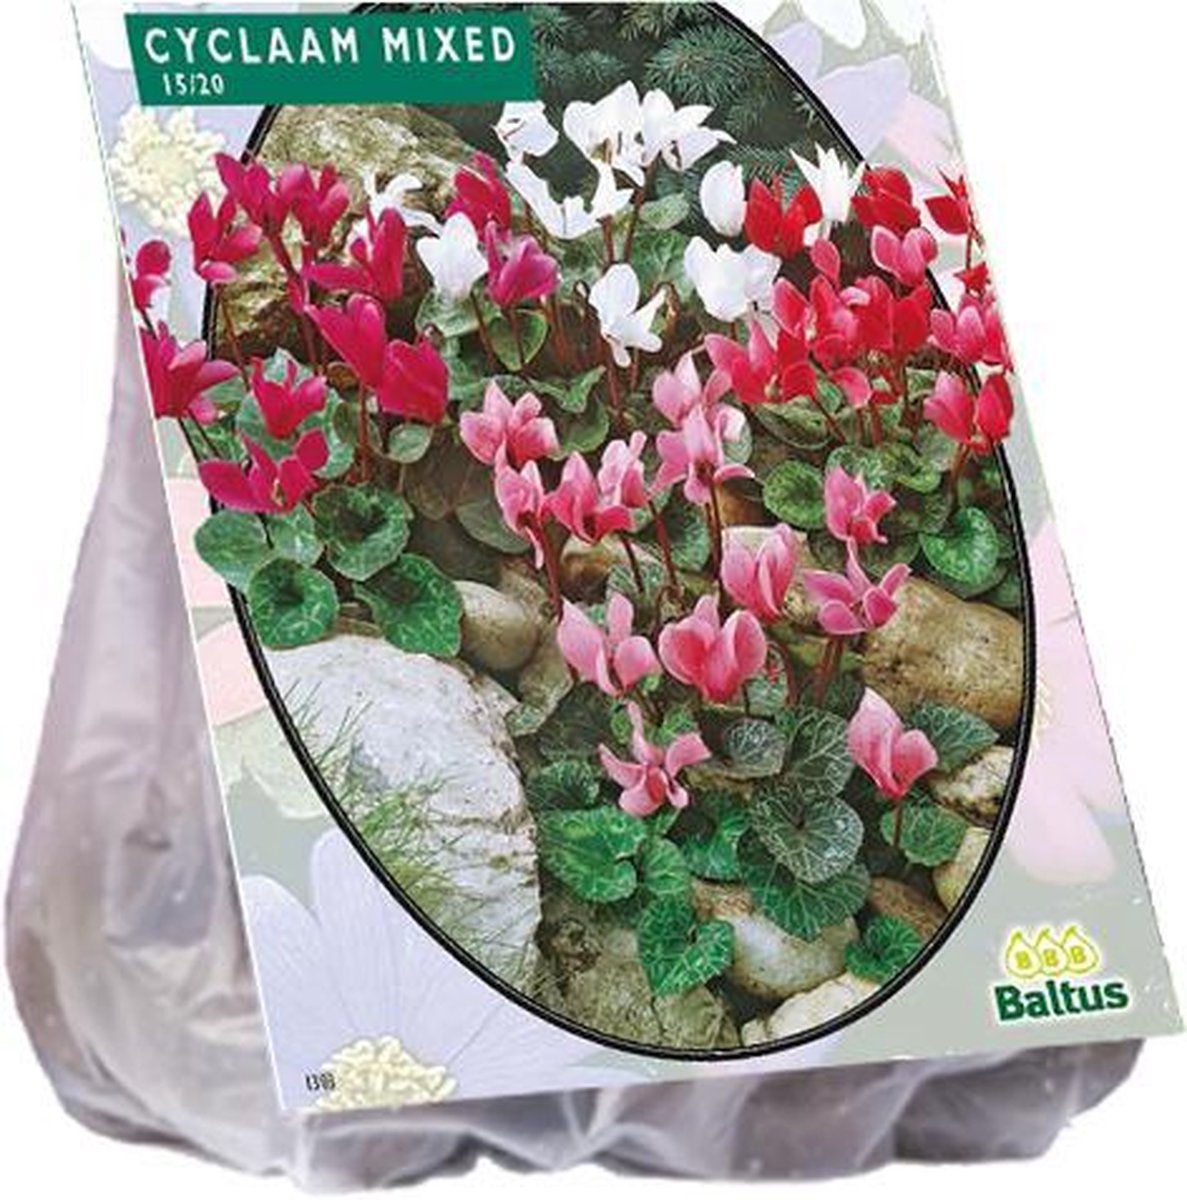 Cyclaam Mixed - 5 bloembollen